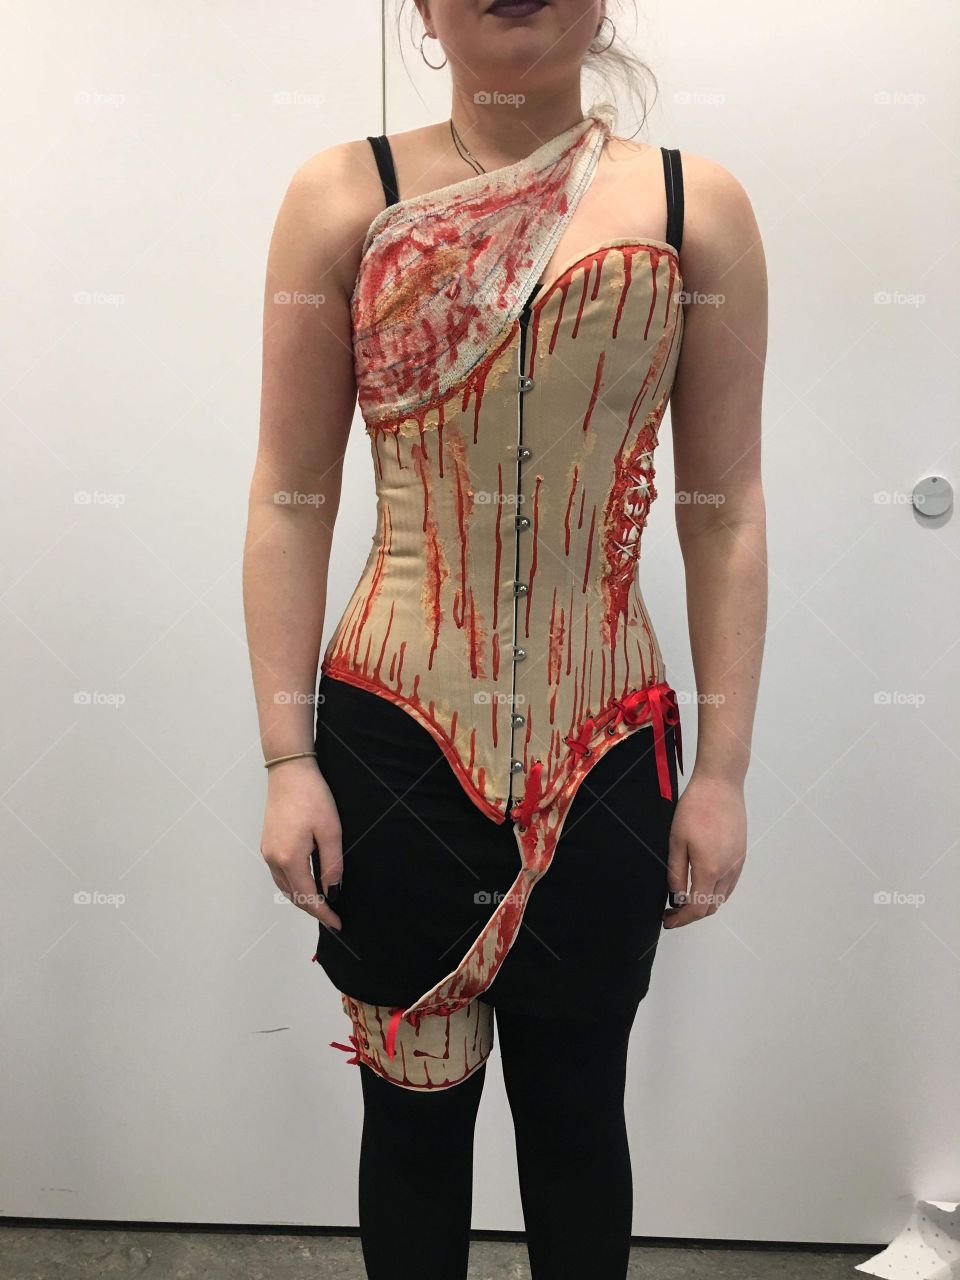 Gore corset 